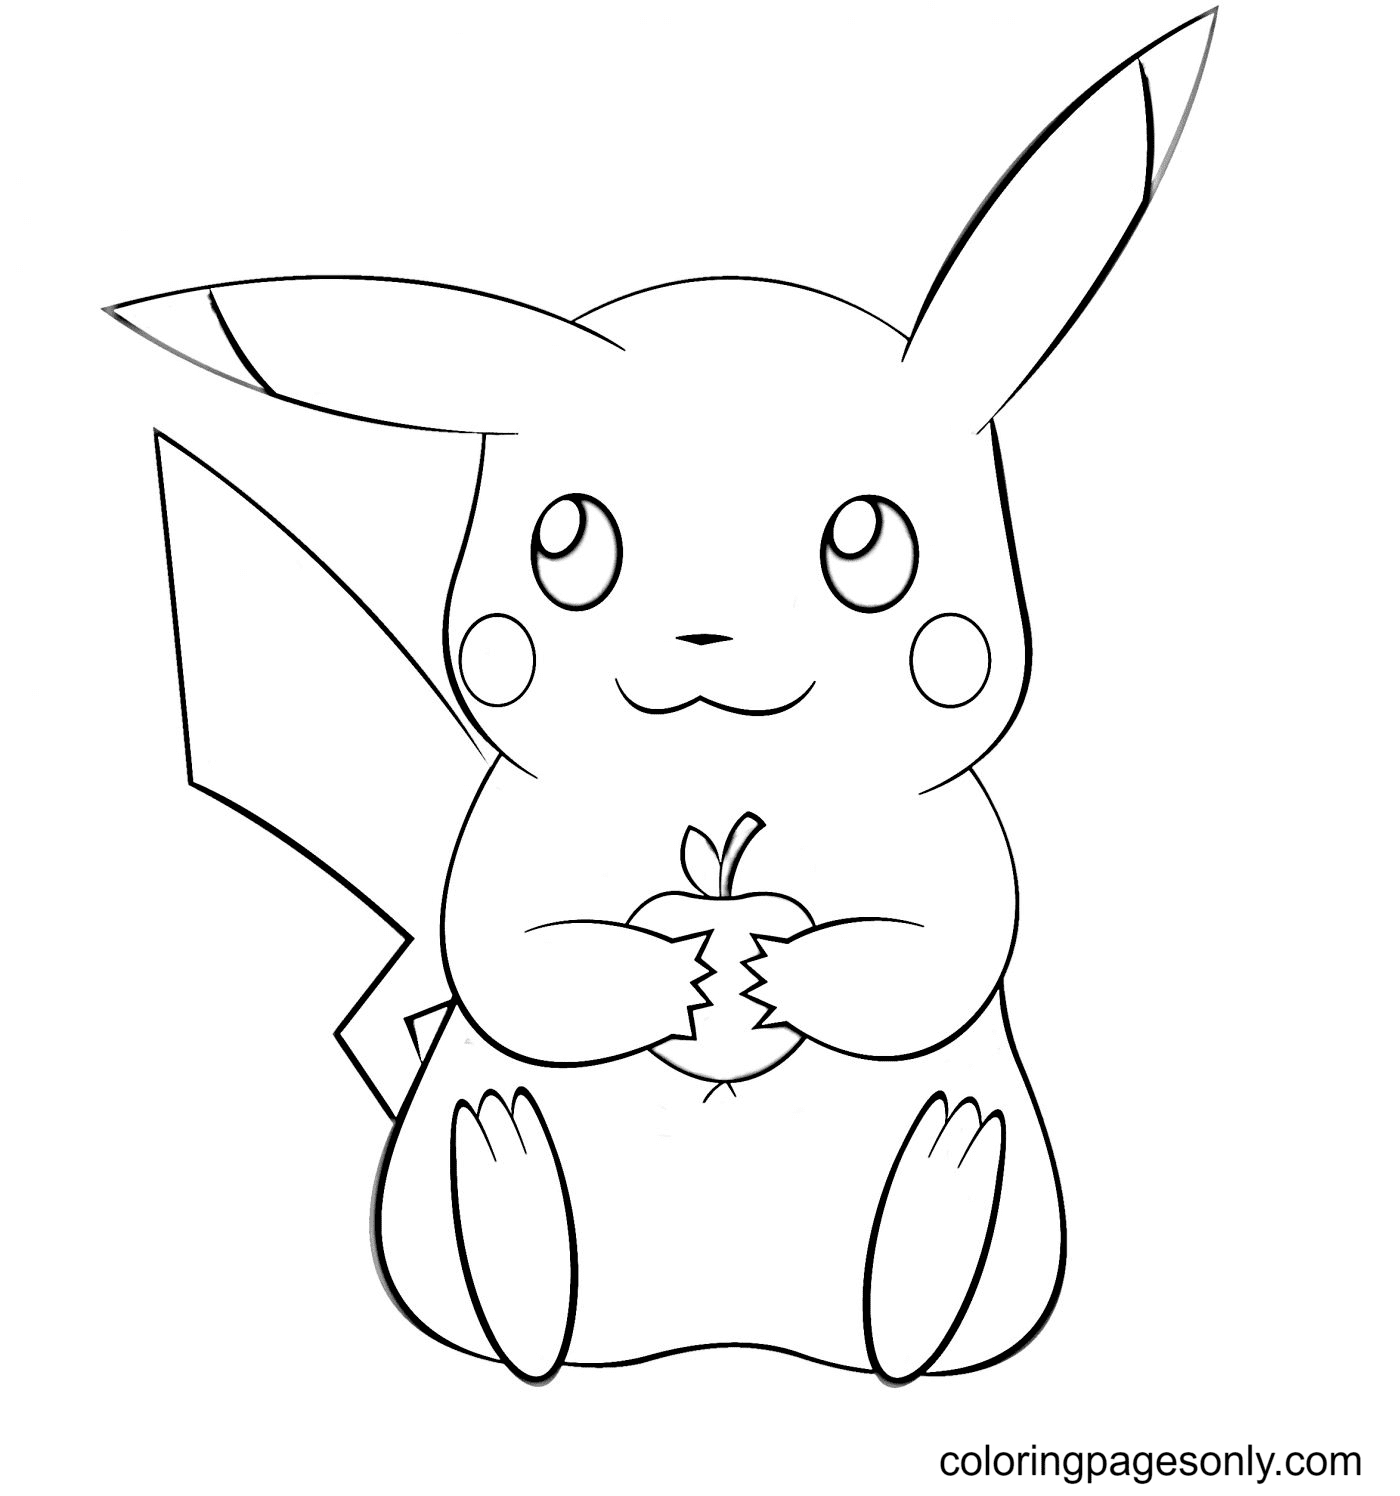 Pikachu houdt appel vast van Pikachu